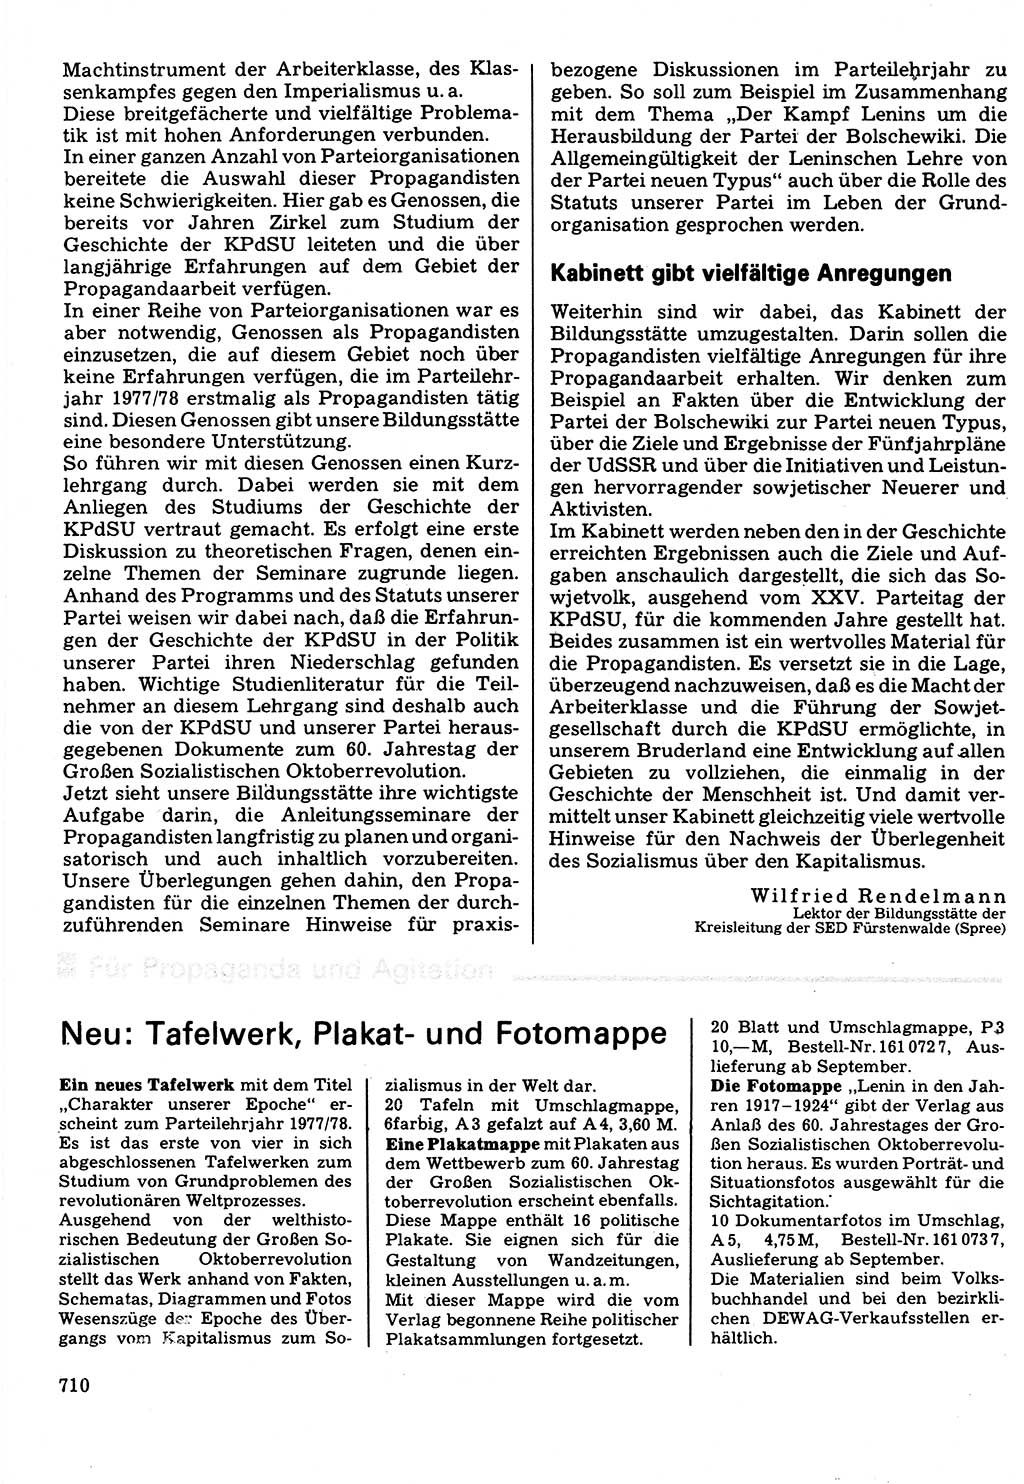 Neuer Weg (NW), Organ des Zentralkomitees (ZK) der SED (Sozialistische Einheitspartei Deutschlands) für Fragen des Parteilebens, 32. Jahrgang [Deutsche Demokratische Republik (DDR)] 1977, Seite 710 (NW ZK SED DDR 1977, S. 710)